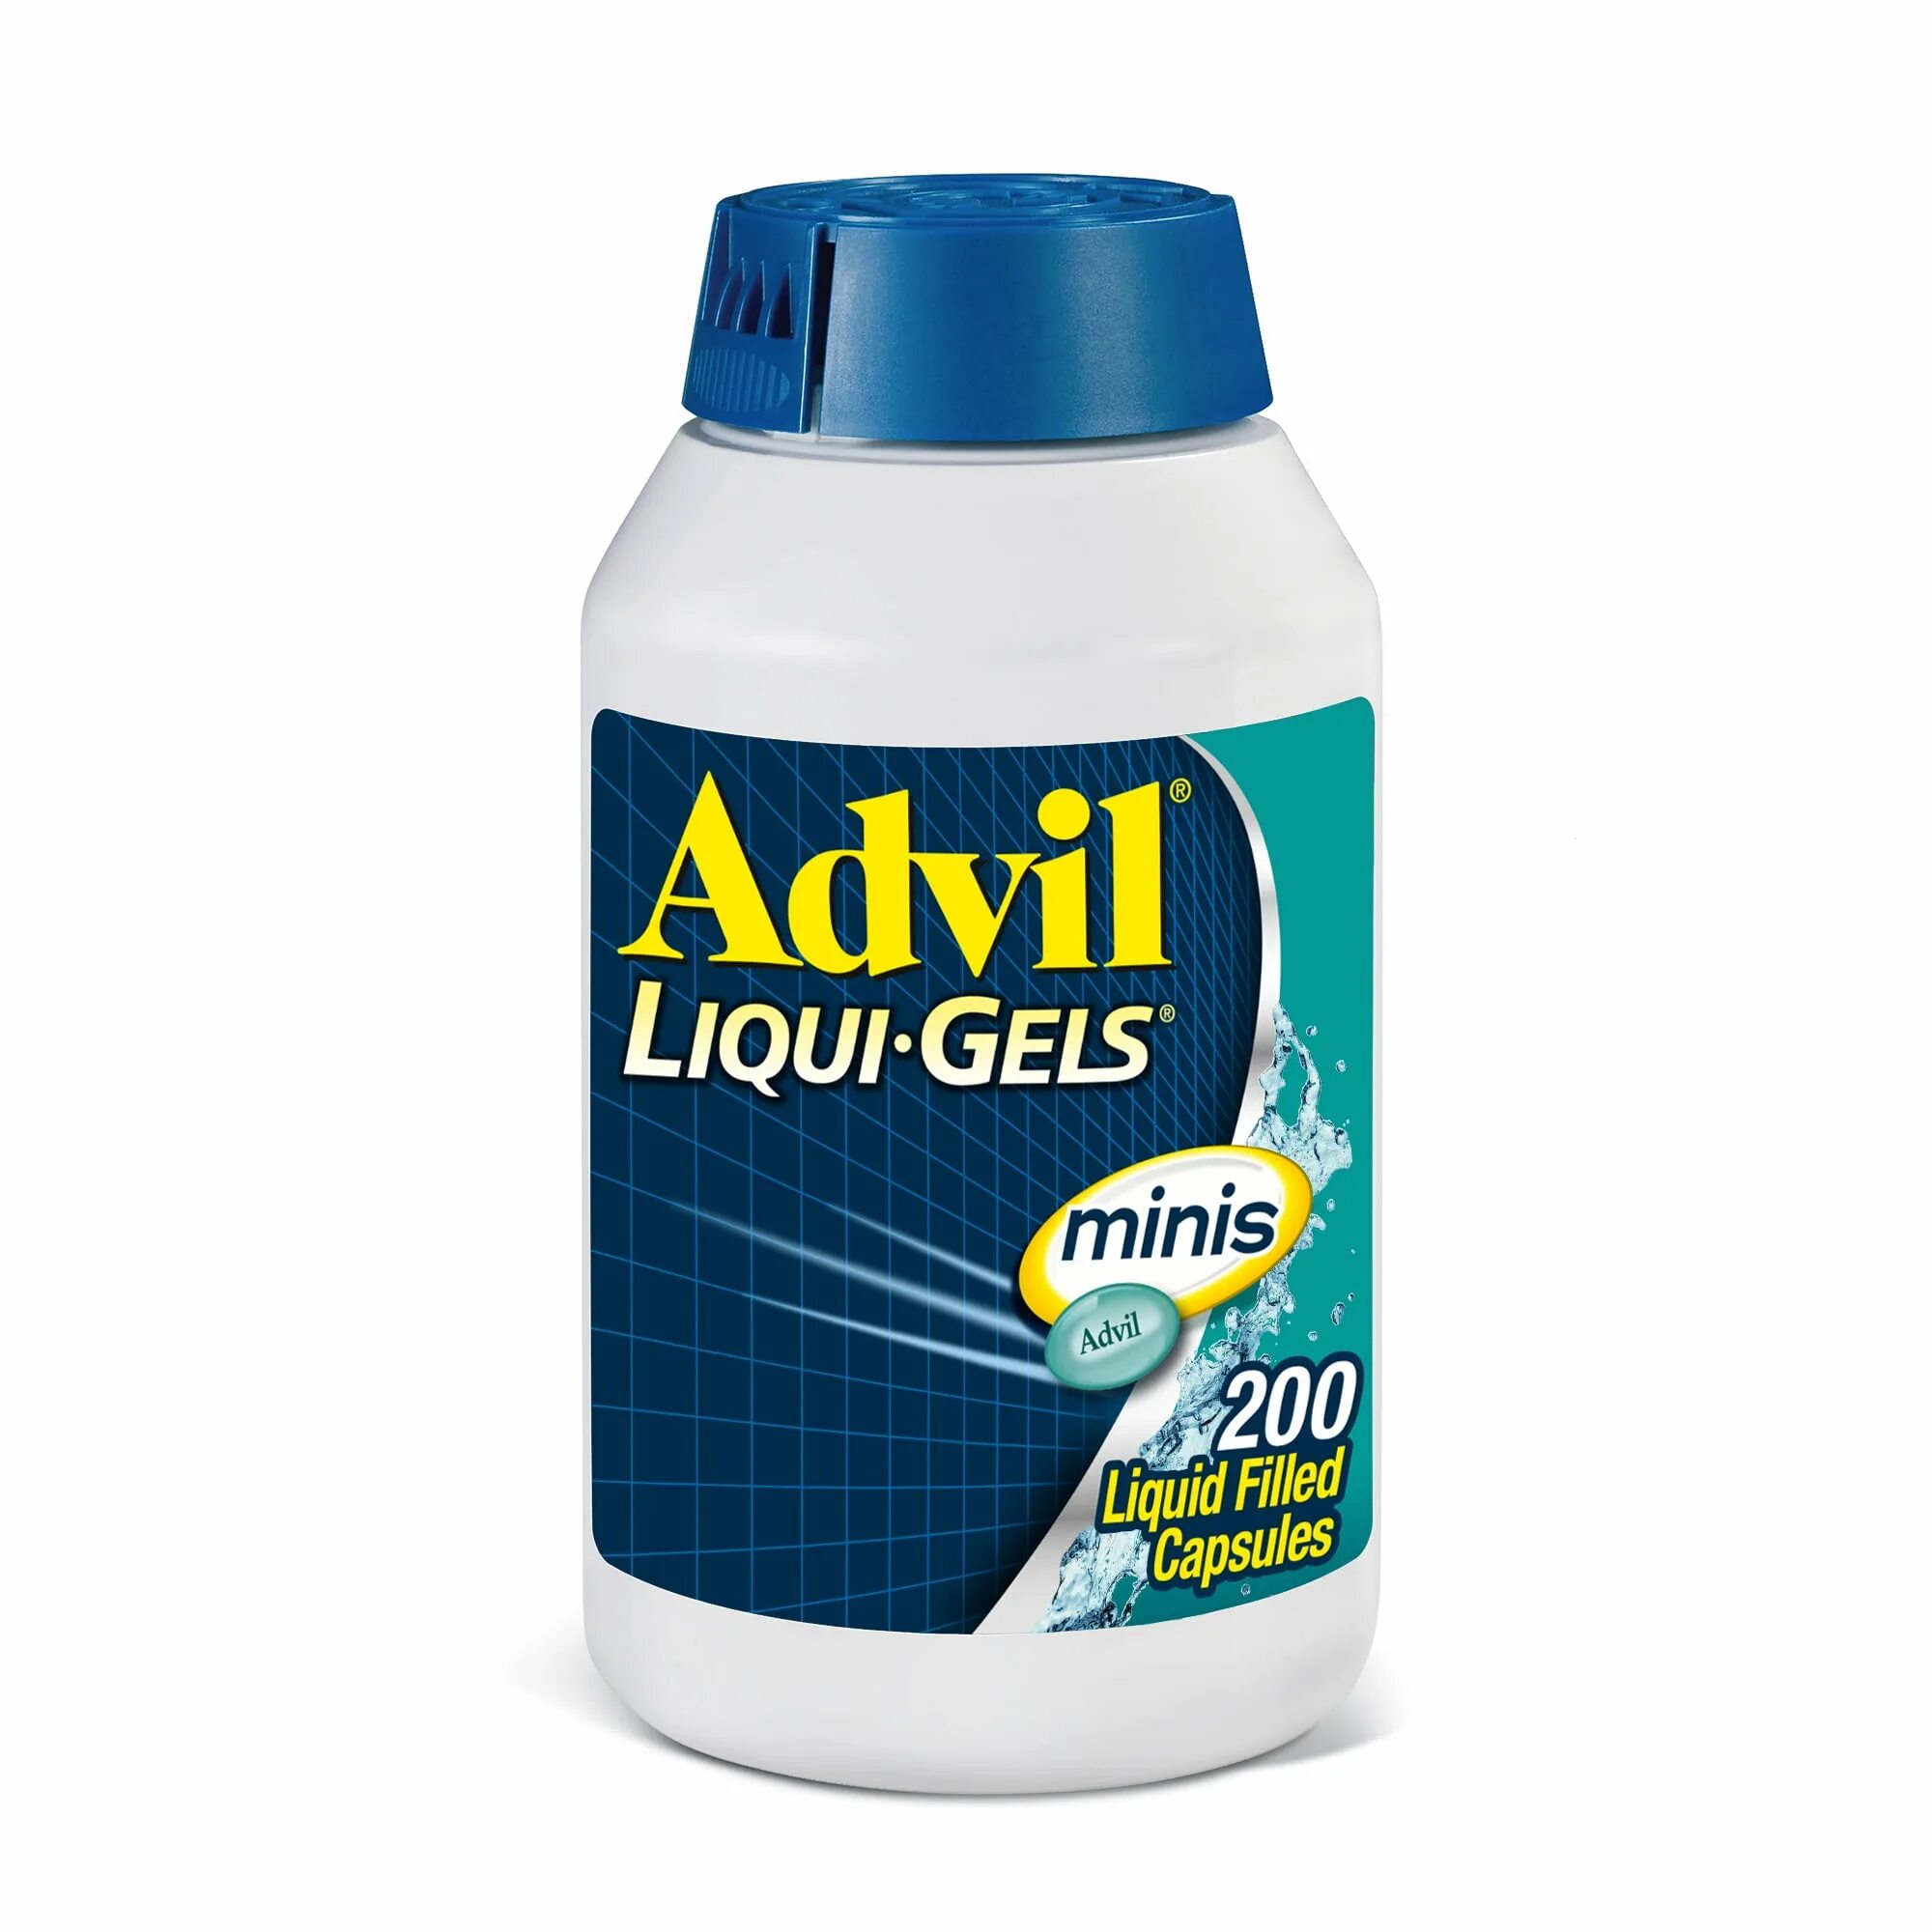 Advil Liqui-Gels. Advil Liqui-Gels 400. Advil Liqui-Gels 200. Advil 200mg Liquigel. Advil gels